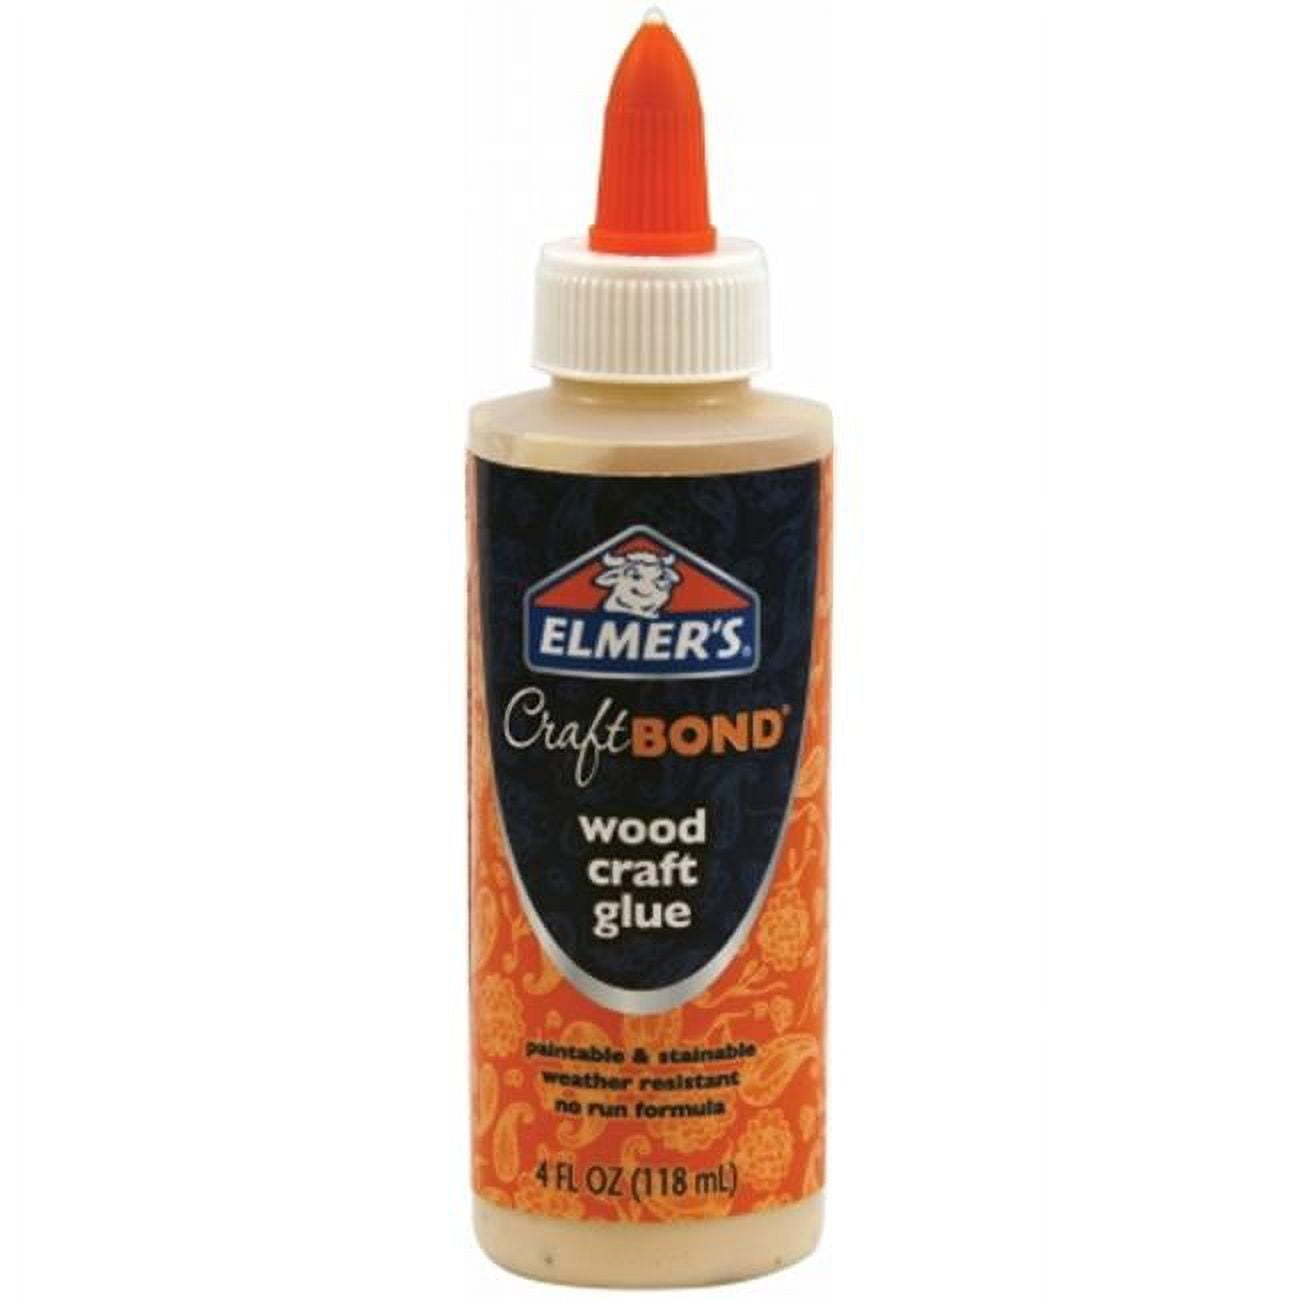 Elmer's Craft Bond Wood Glue, 4oz.